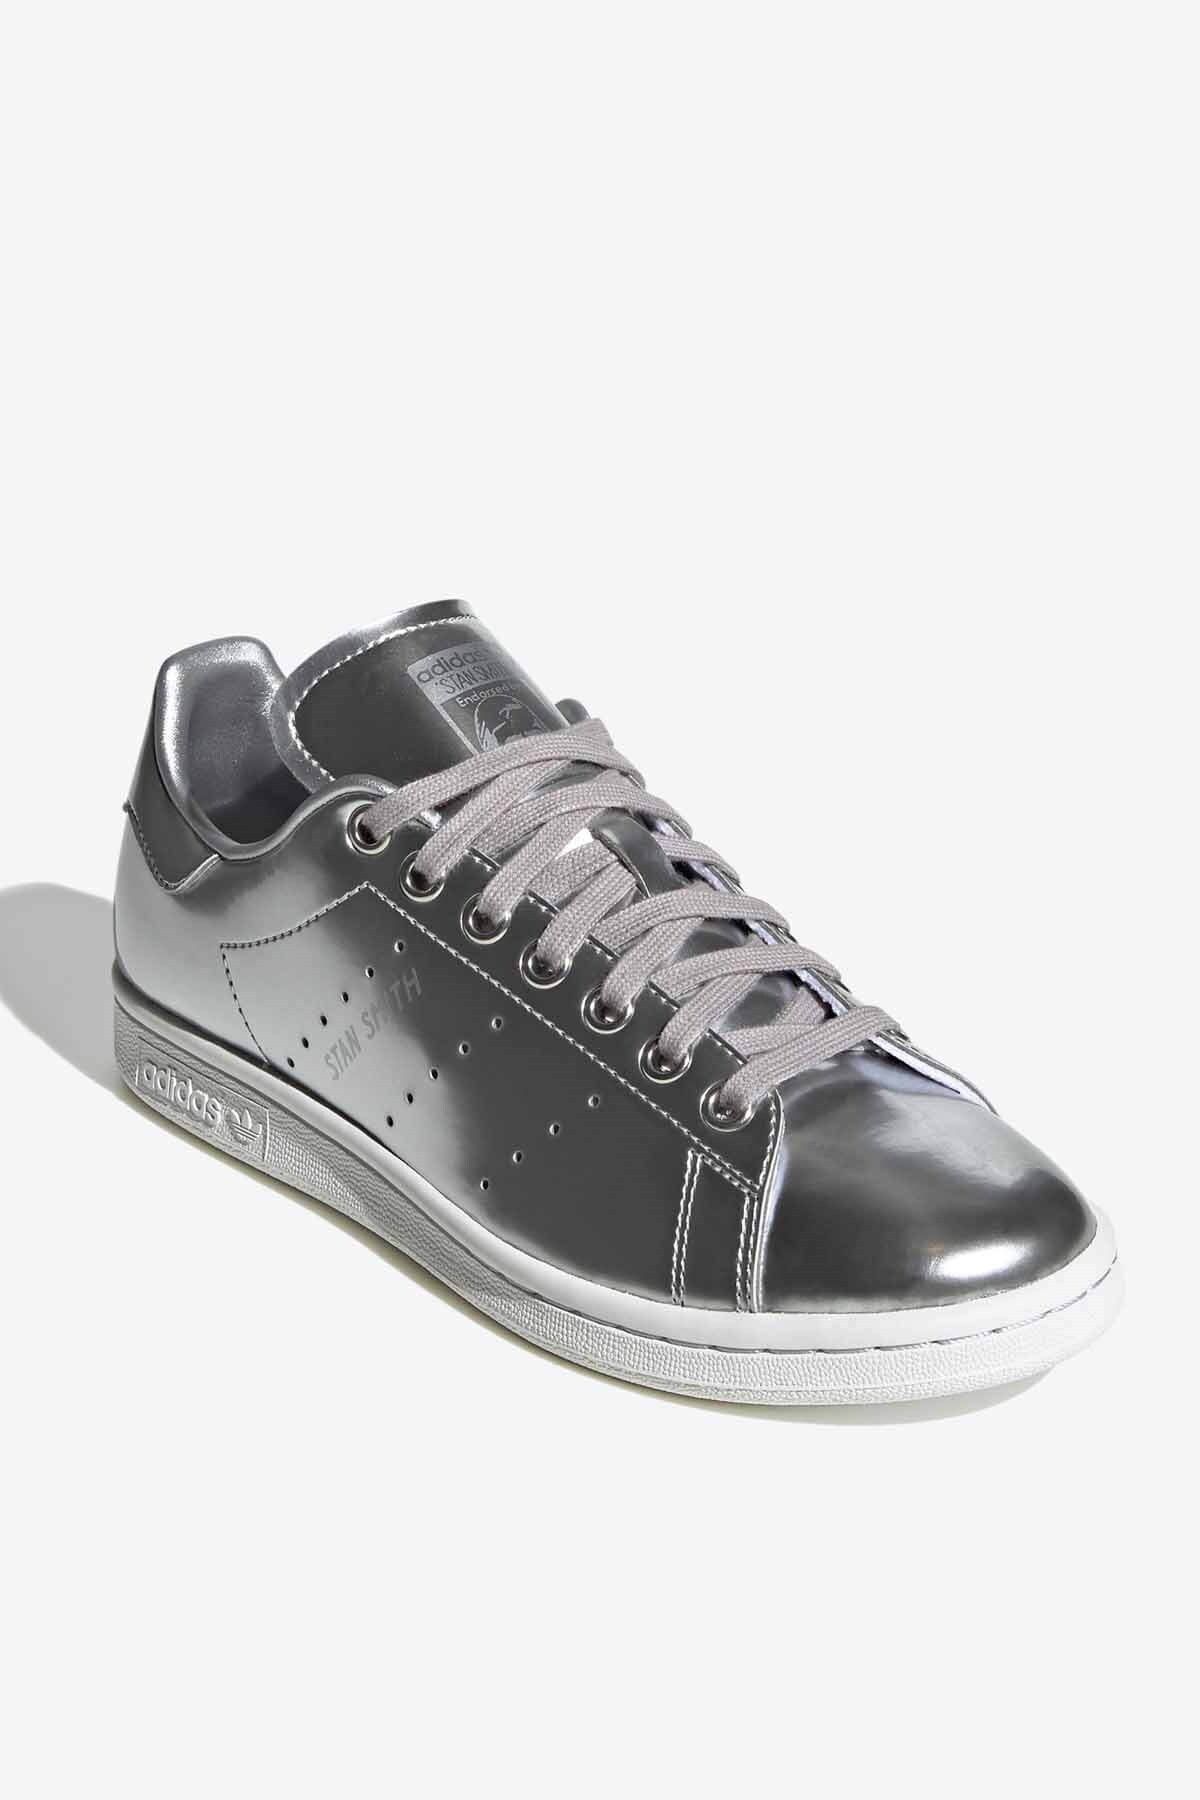 adidas Stan Smıth Kadın Günlük Spor Ayakkabı Fw5477gümüş